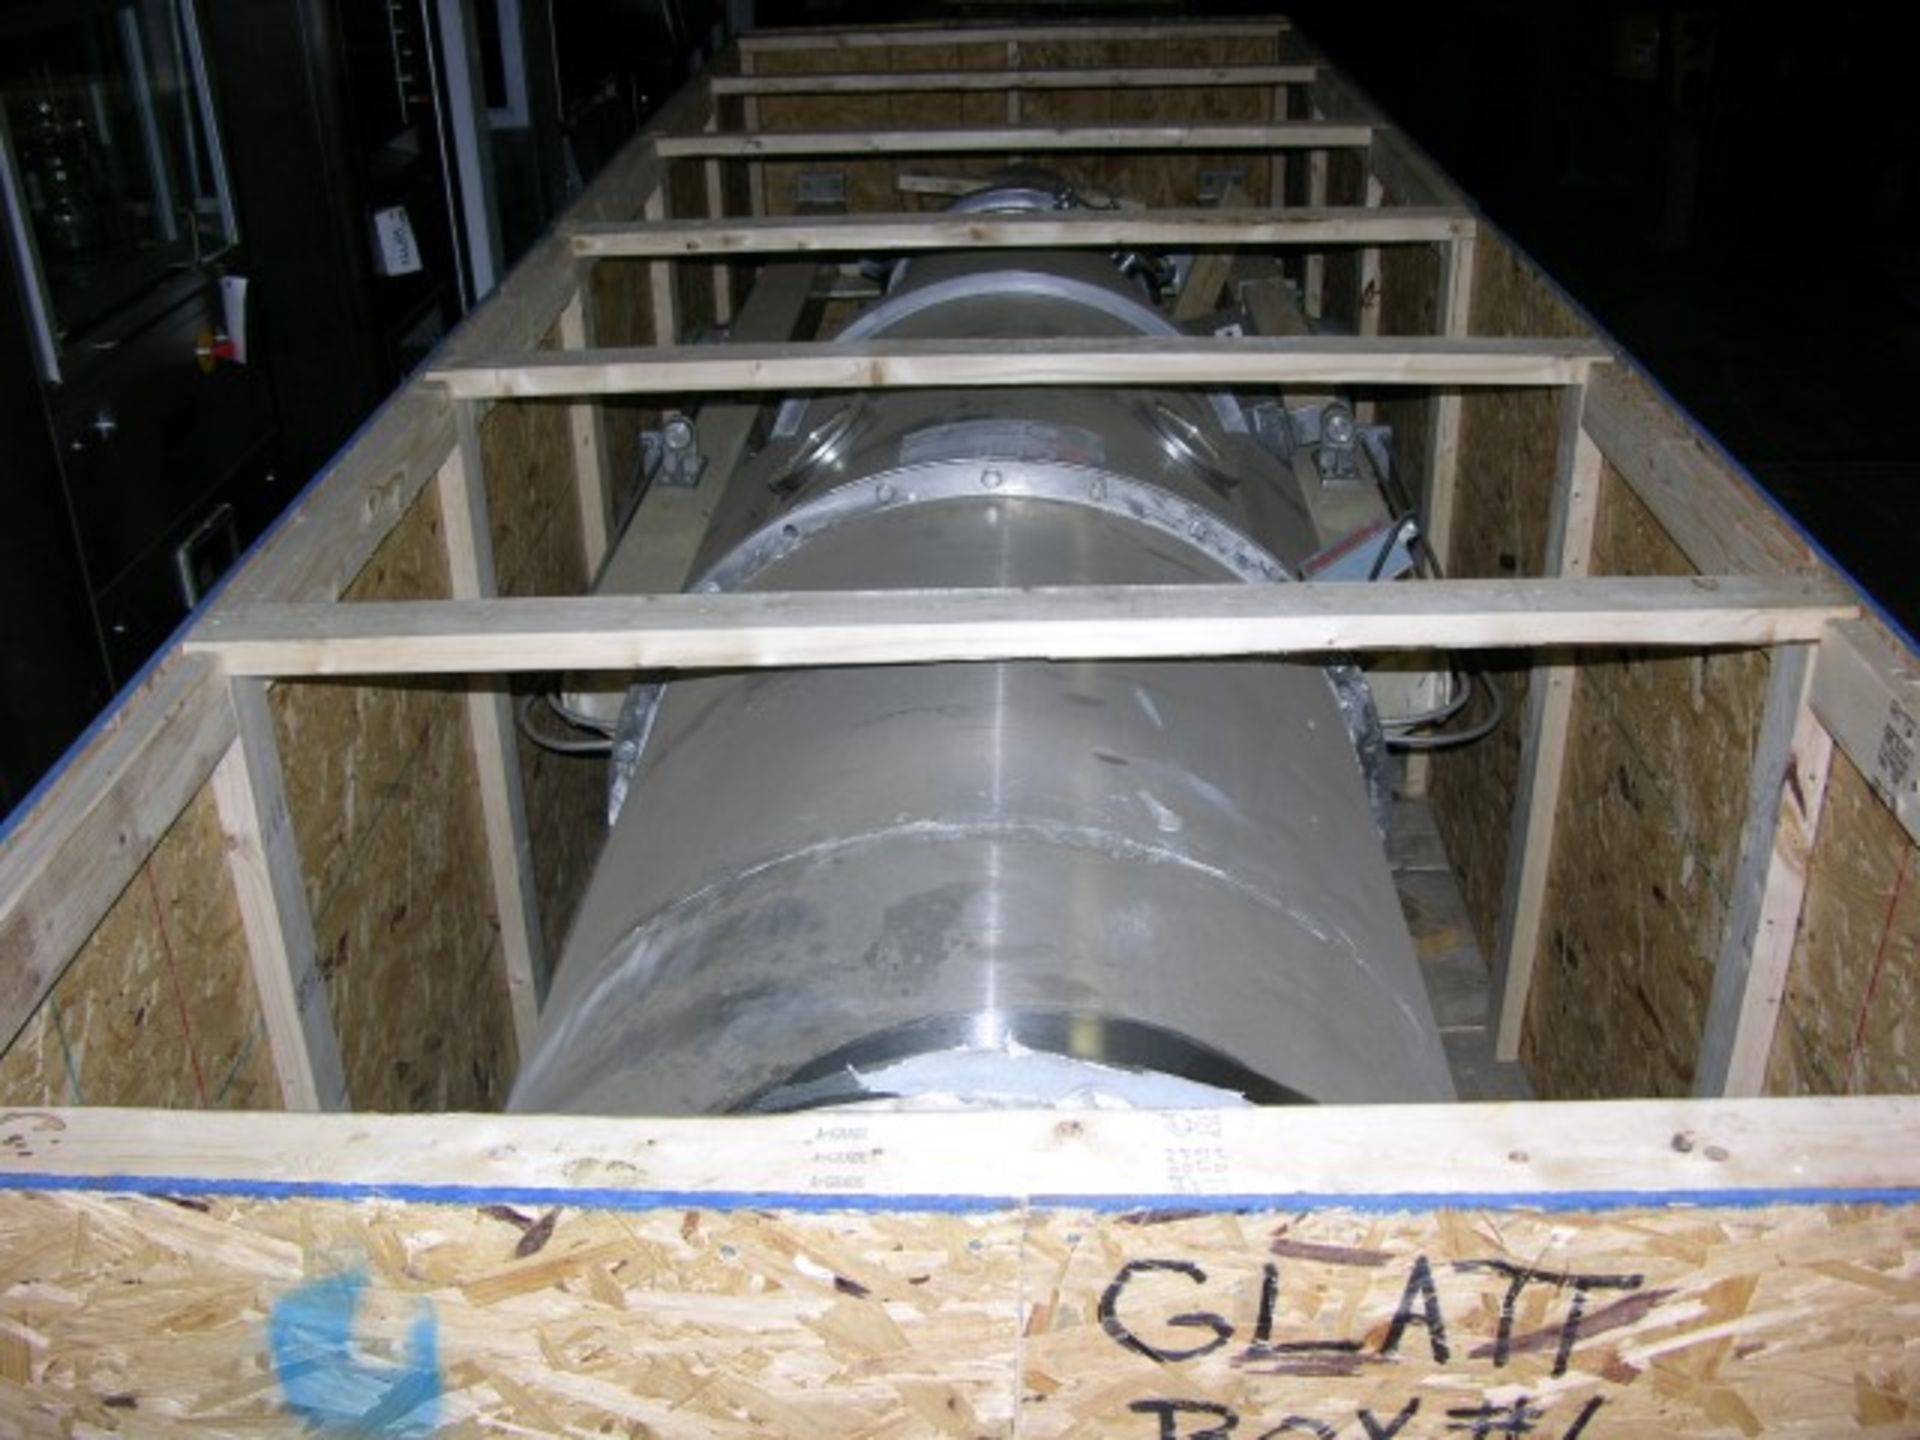 Glatt GPCG 15/30 fluid bed dryer/granulator stainless steel construction including spray